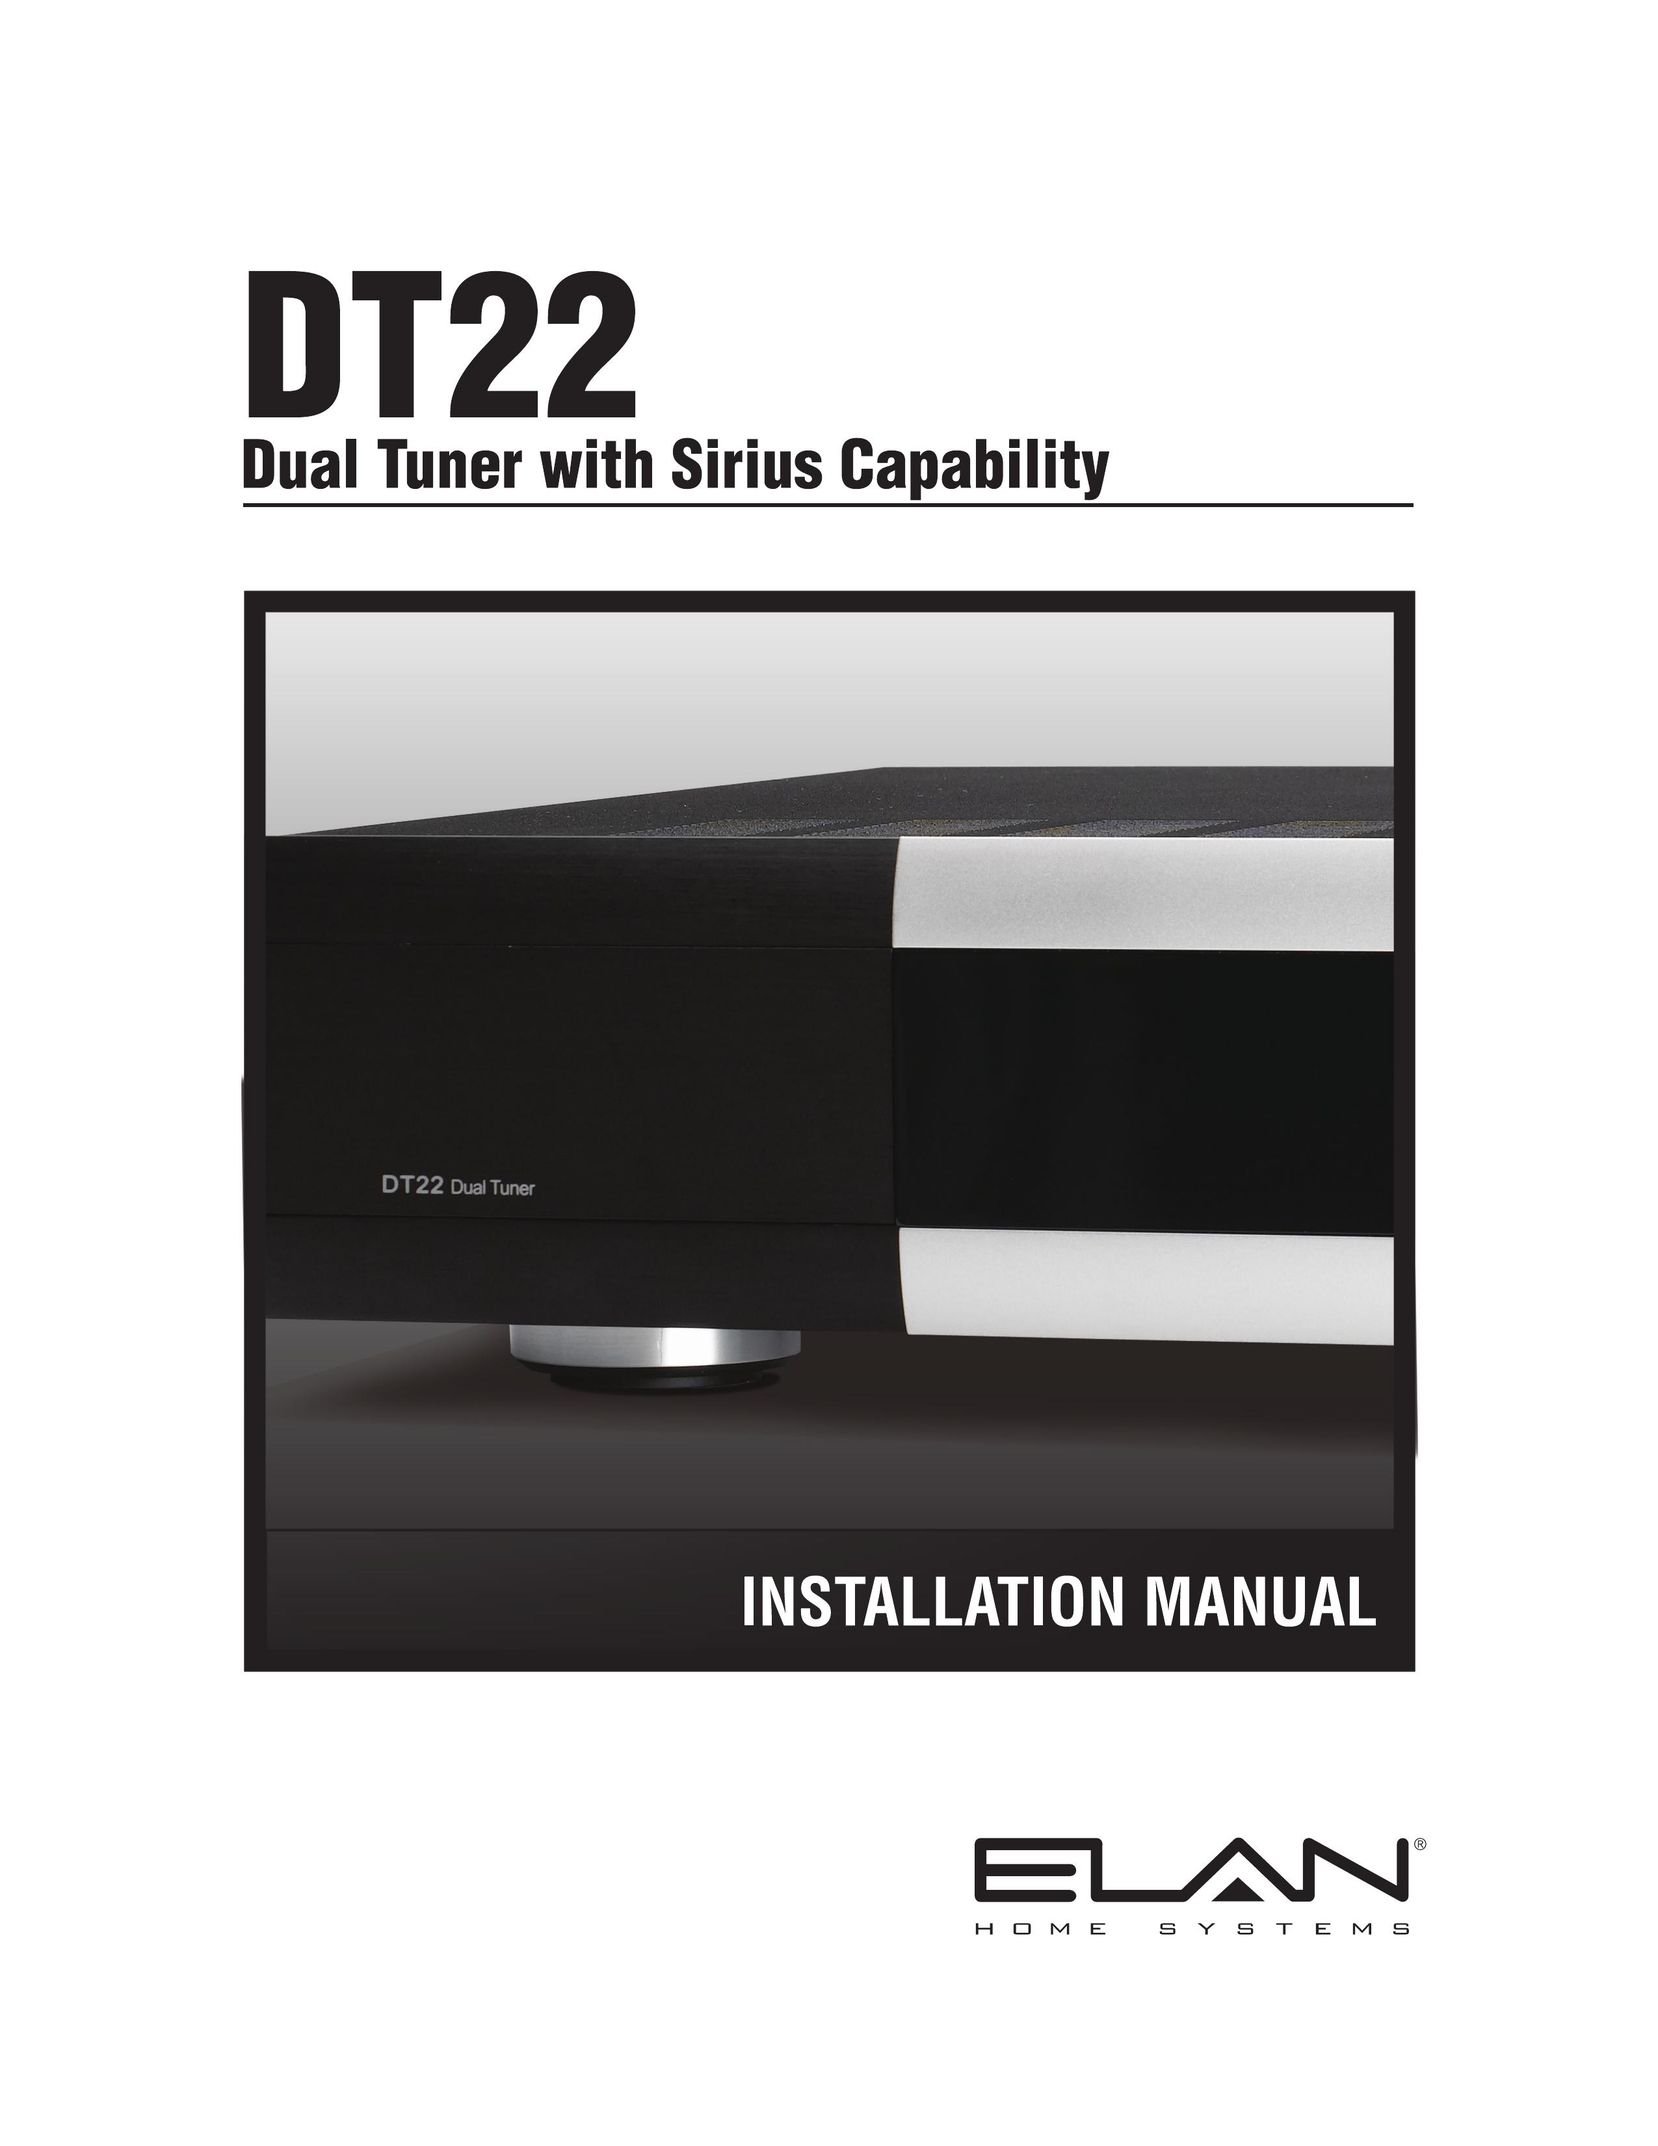 ELAN Home Systems DT22 Satellite Radio User Manual